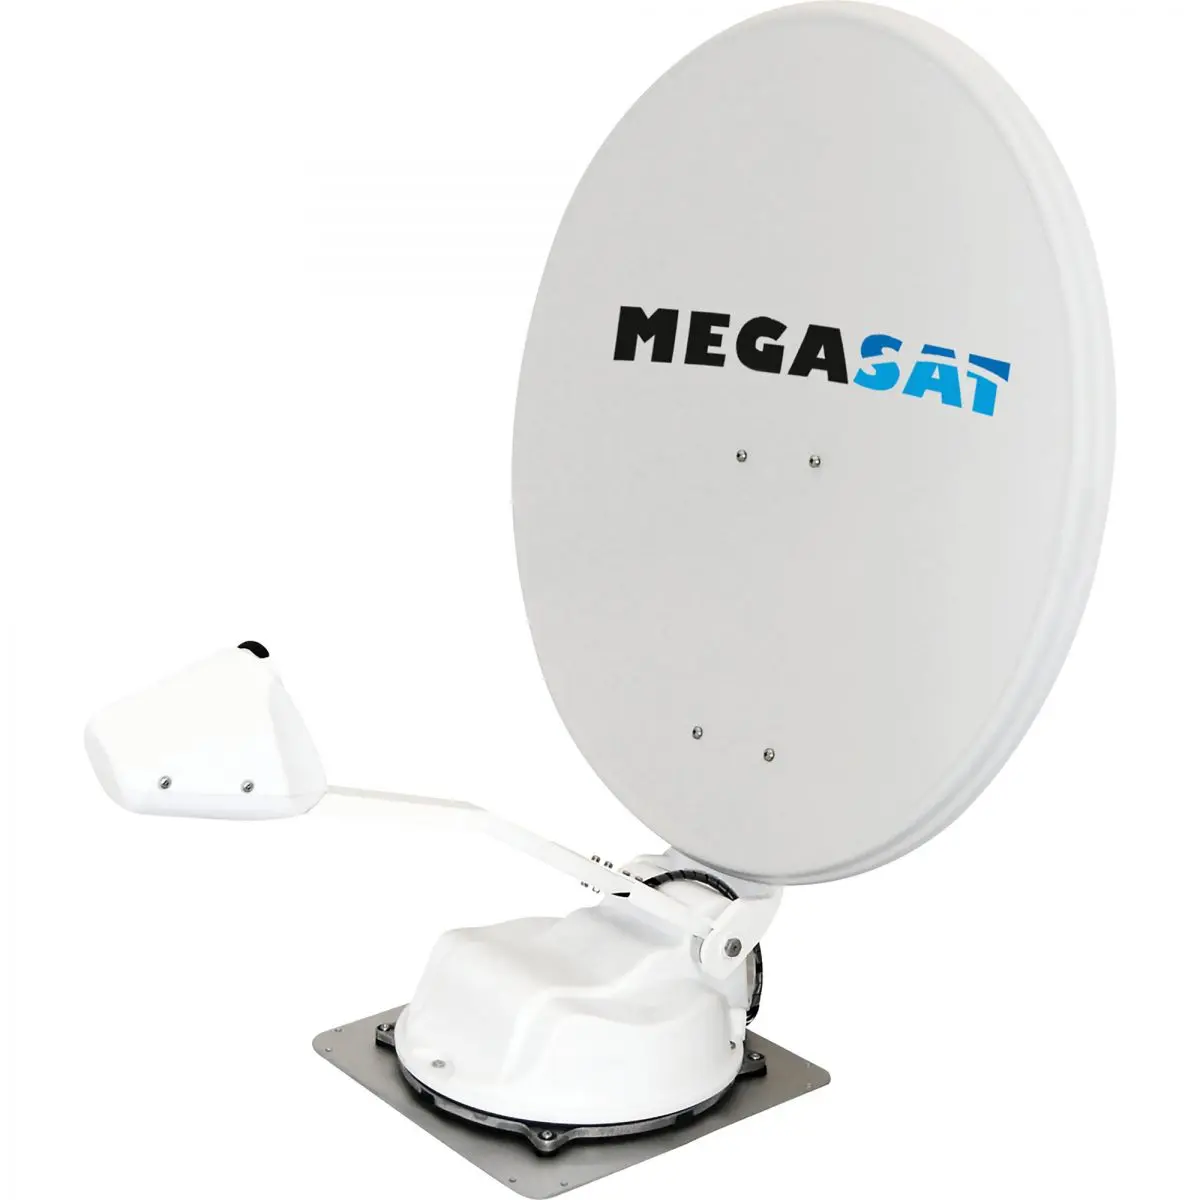 Sistem GPS prin satelit Megasat Caravanman 85 Professional